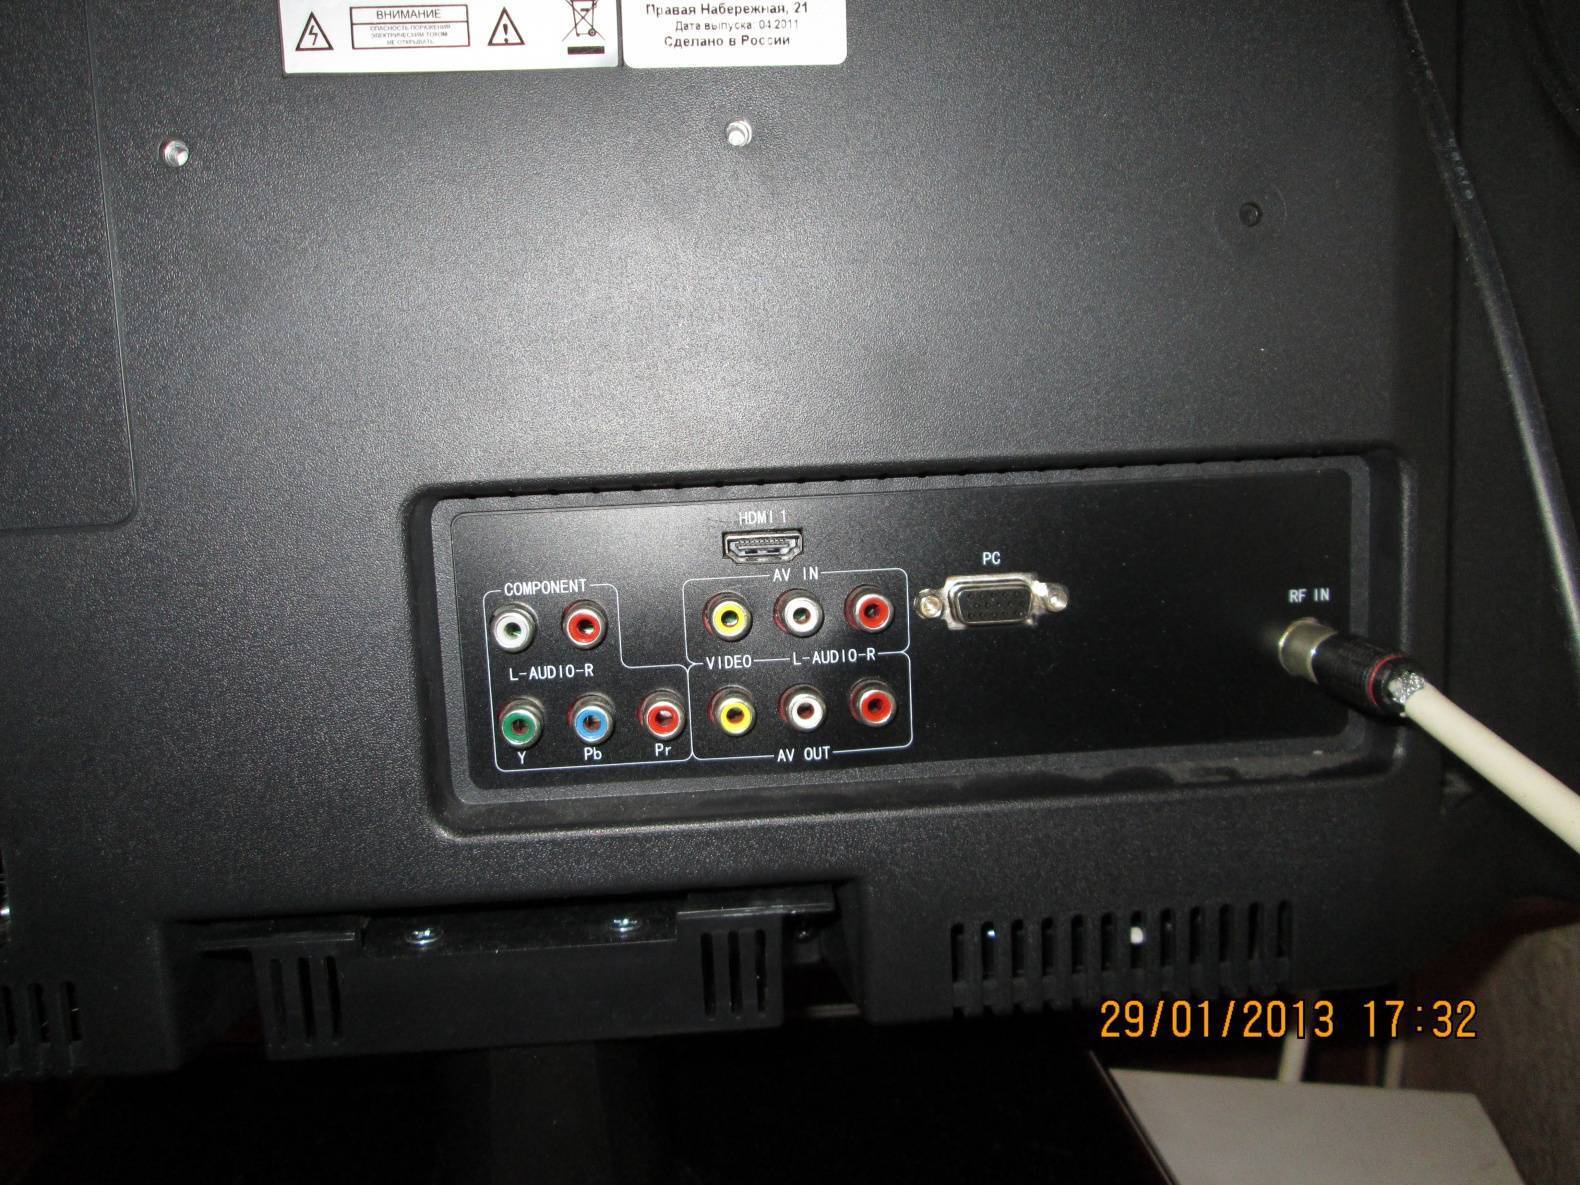 Как подключить караоке к телевизору: подбор оборудования и пошаговая инструкция